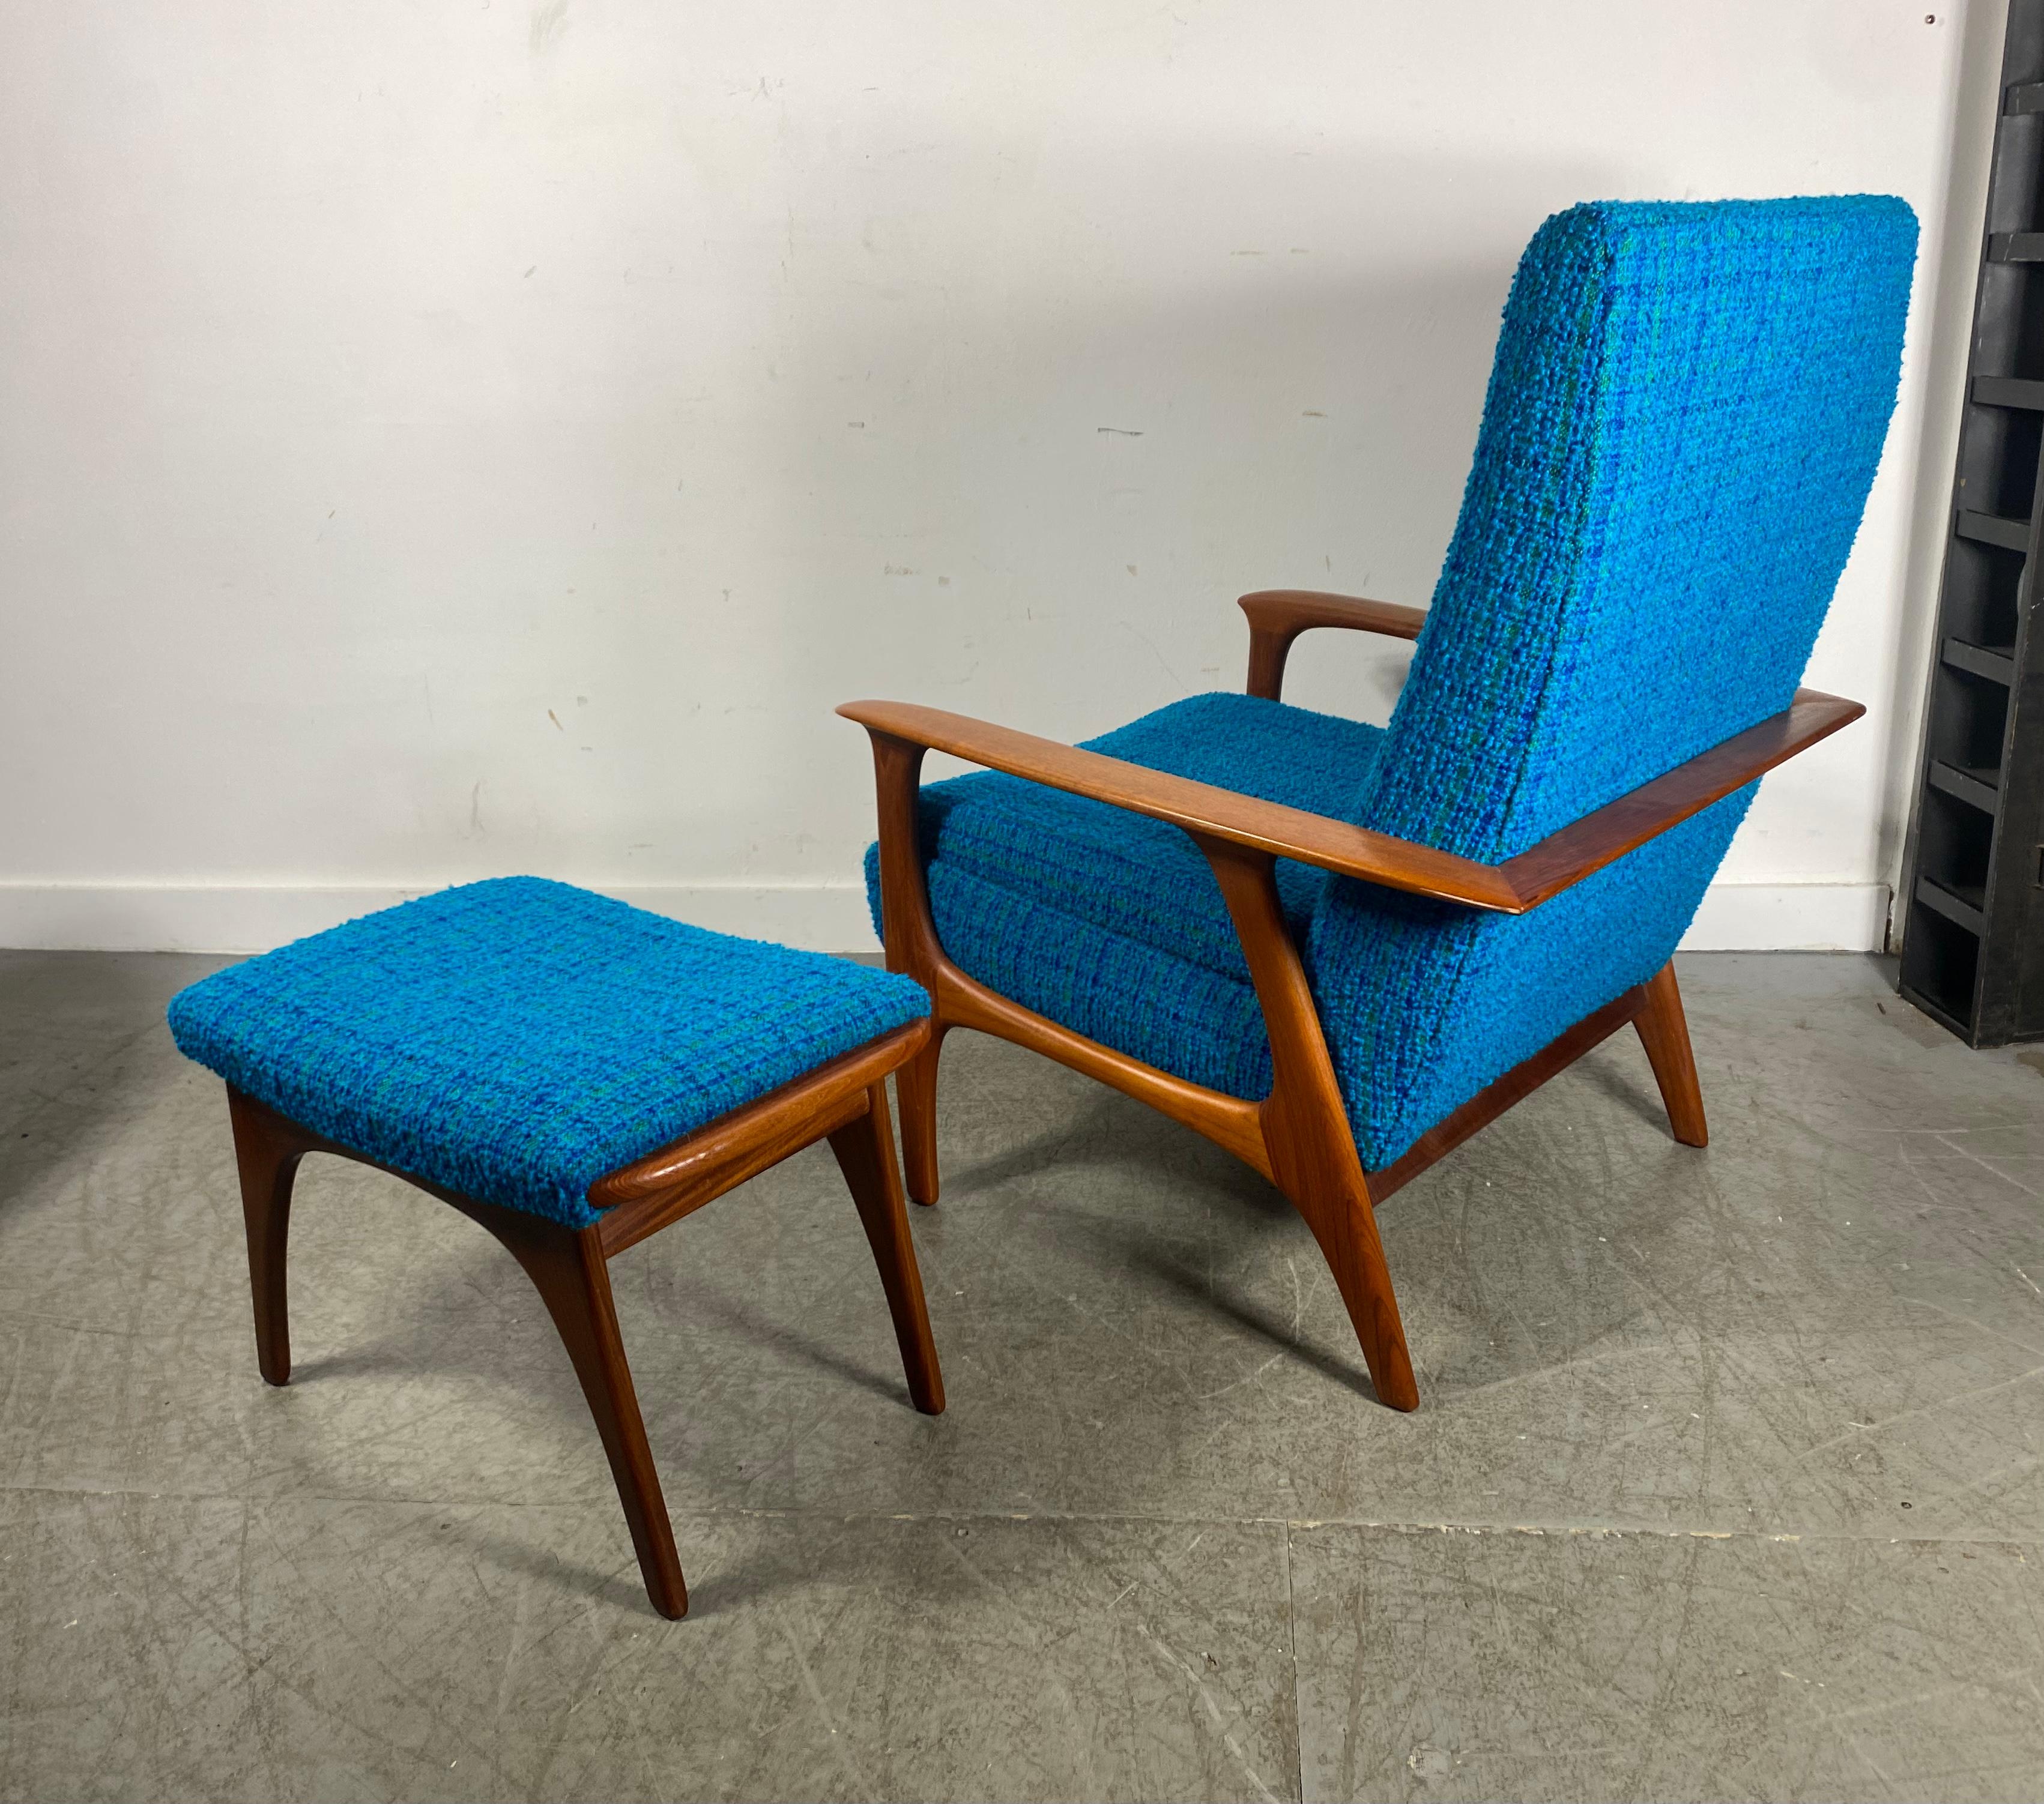 Fabric Classic Scandinavian Modern Teak Lounge Chair and Ottoman, after Hans Wegner